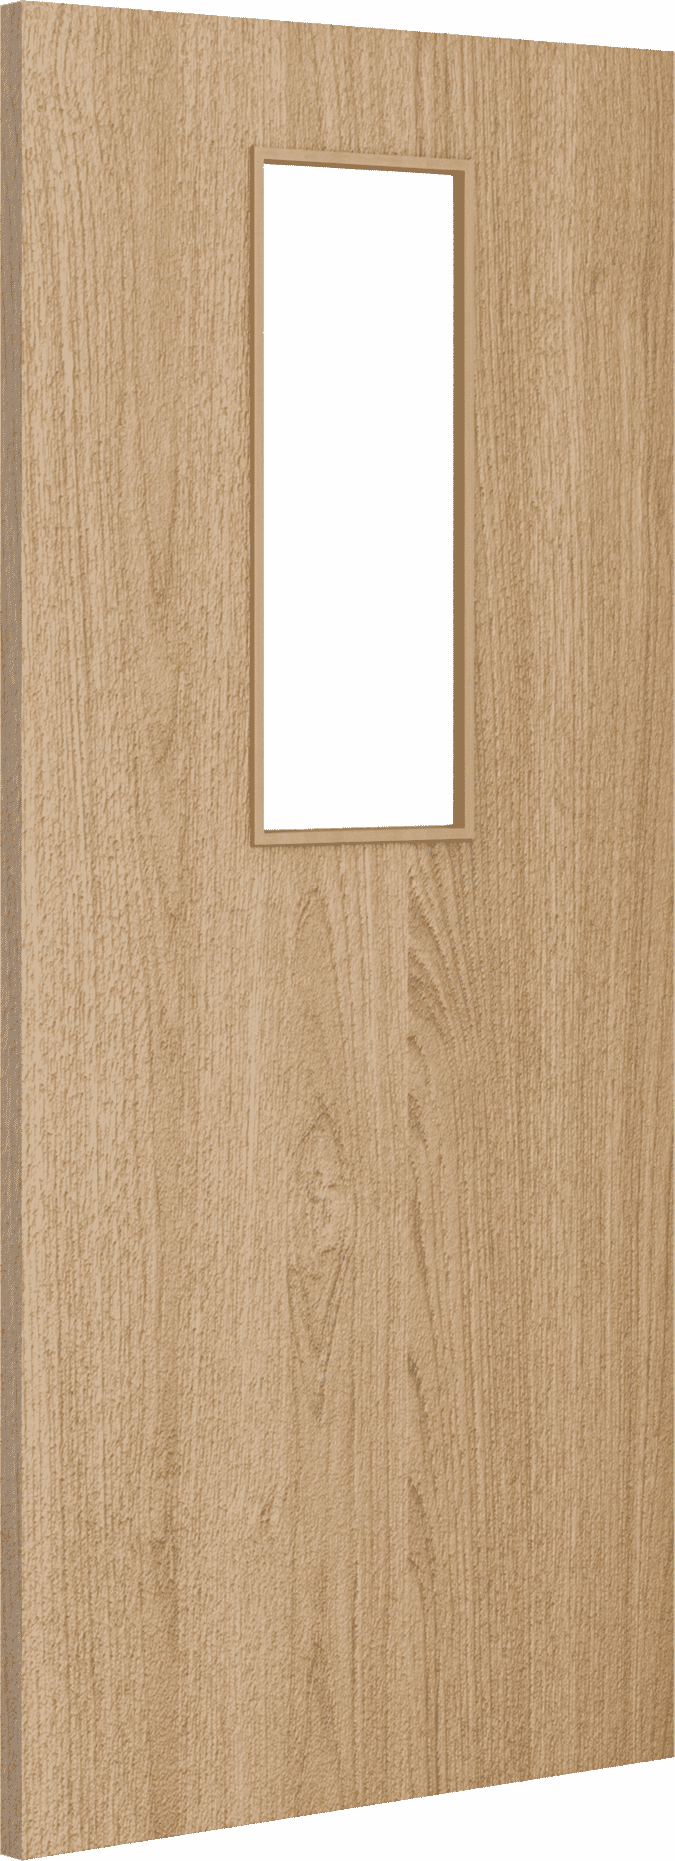 2040mm x 926mm x 44mm Architectural Oak 14 Clear Glazed - Prefinished FD30 Fire Door Blank